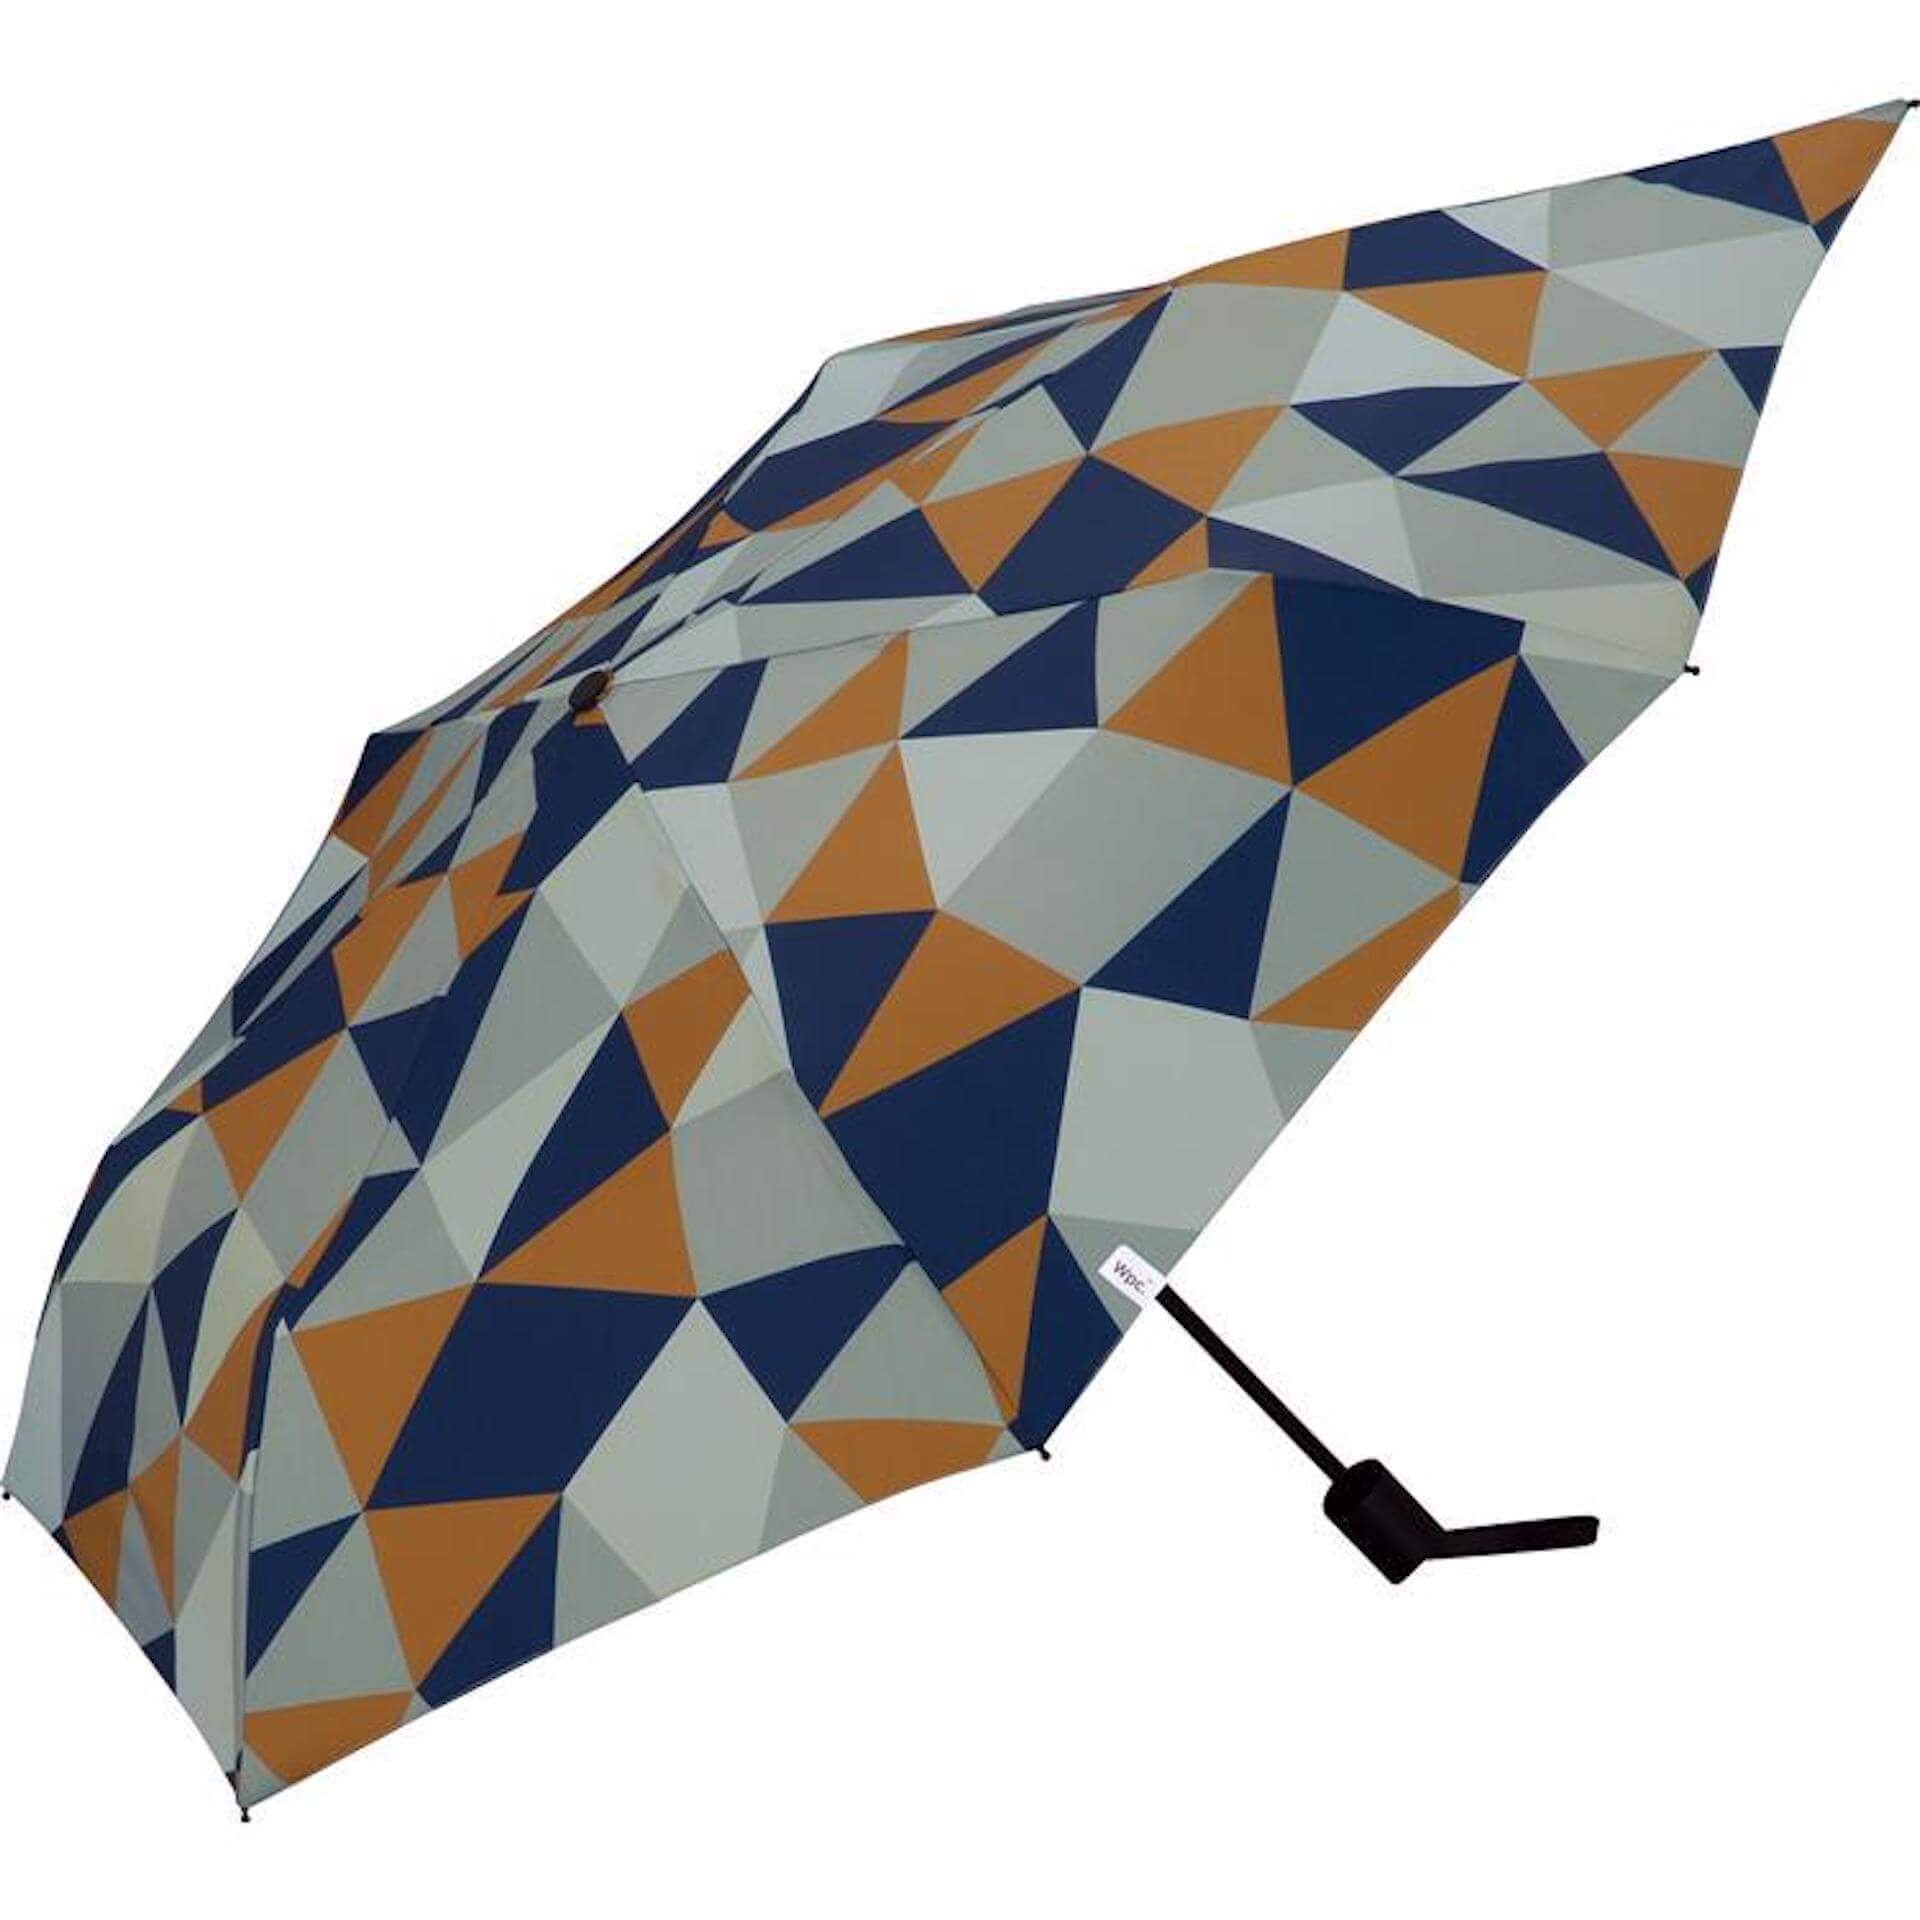 ソーシャルディスタンス確保や熱中症対策などができる最新機能を備えた傘がロフトにて展開中！新作をご紹介 lf200703_umbrella_05